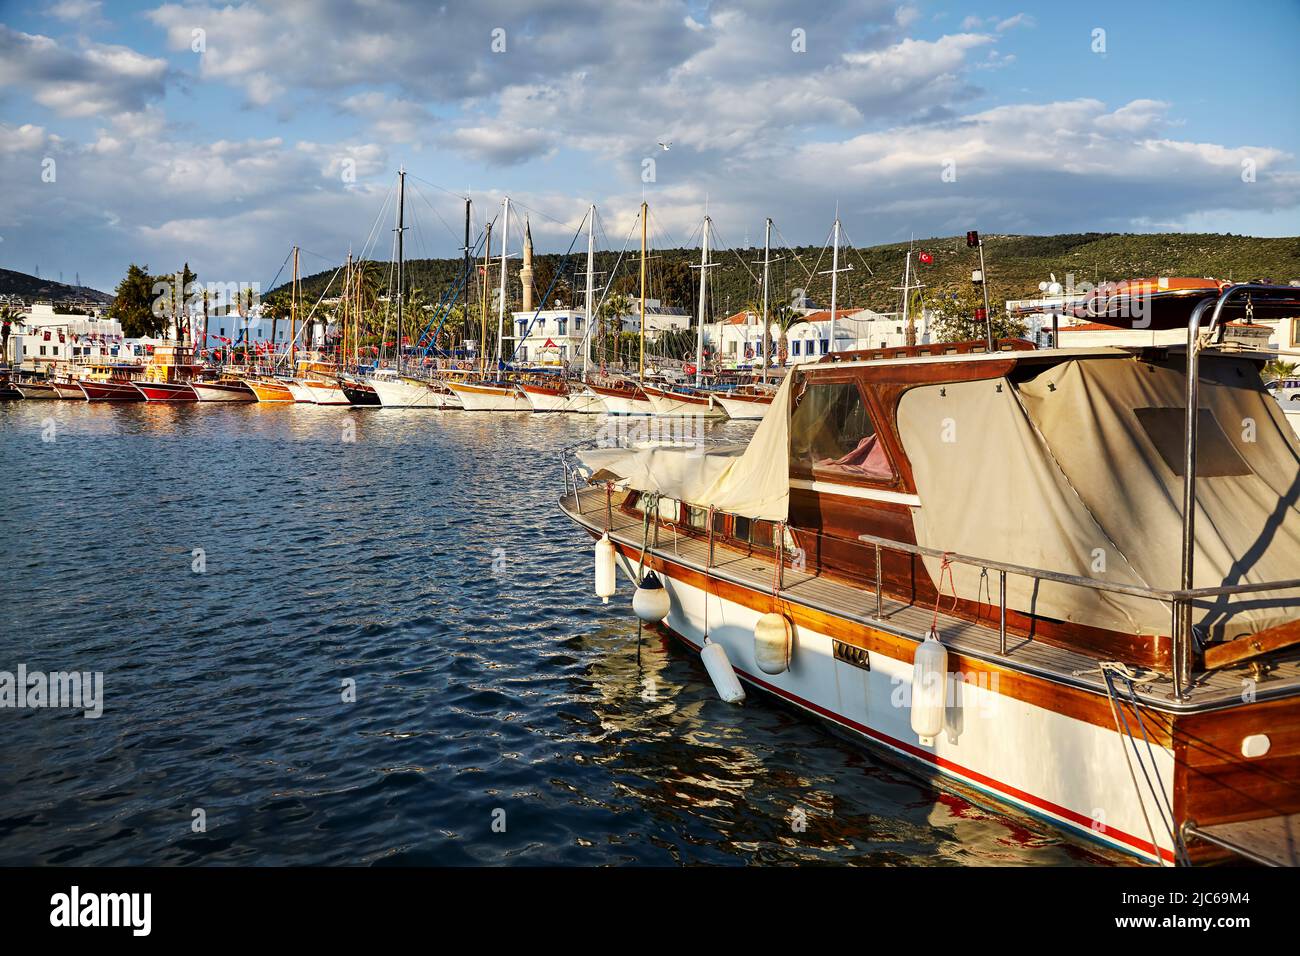 Vista de la playa de Bodrum desde el Paseo Marítimo. Barcos de vela, yates en el mar Egeo con casas blancas tradicionales en las colinas en Bodrum ciudad portuaria de Turquía Foto de stock